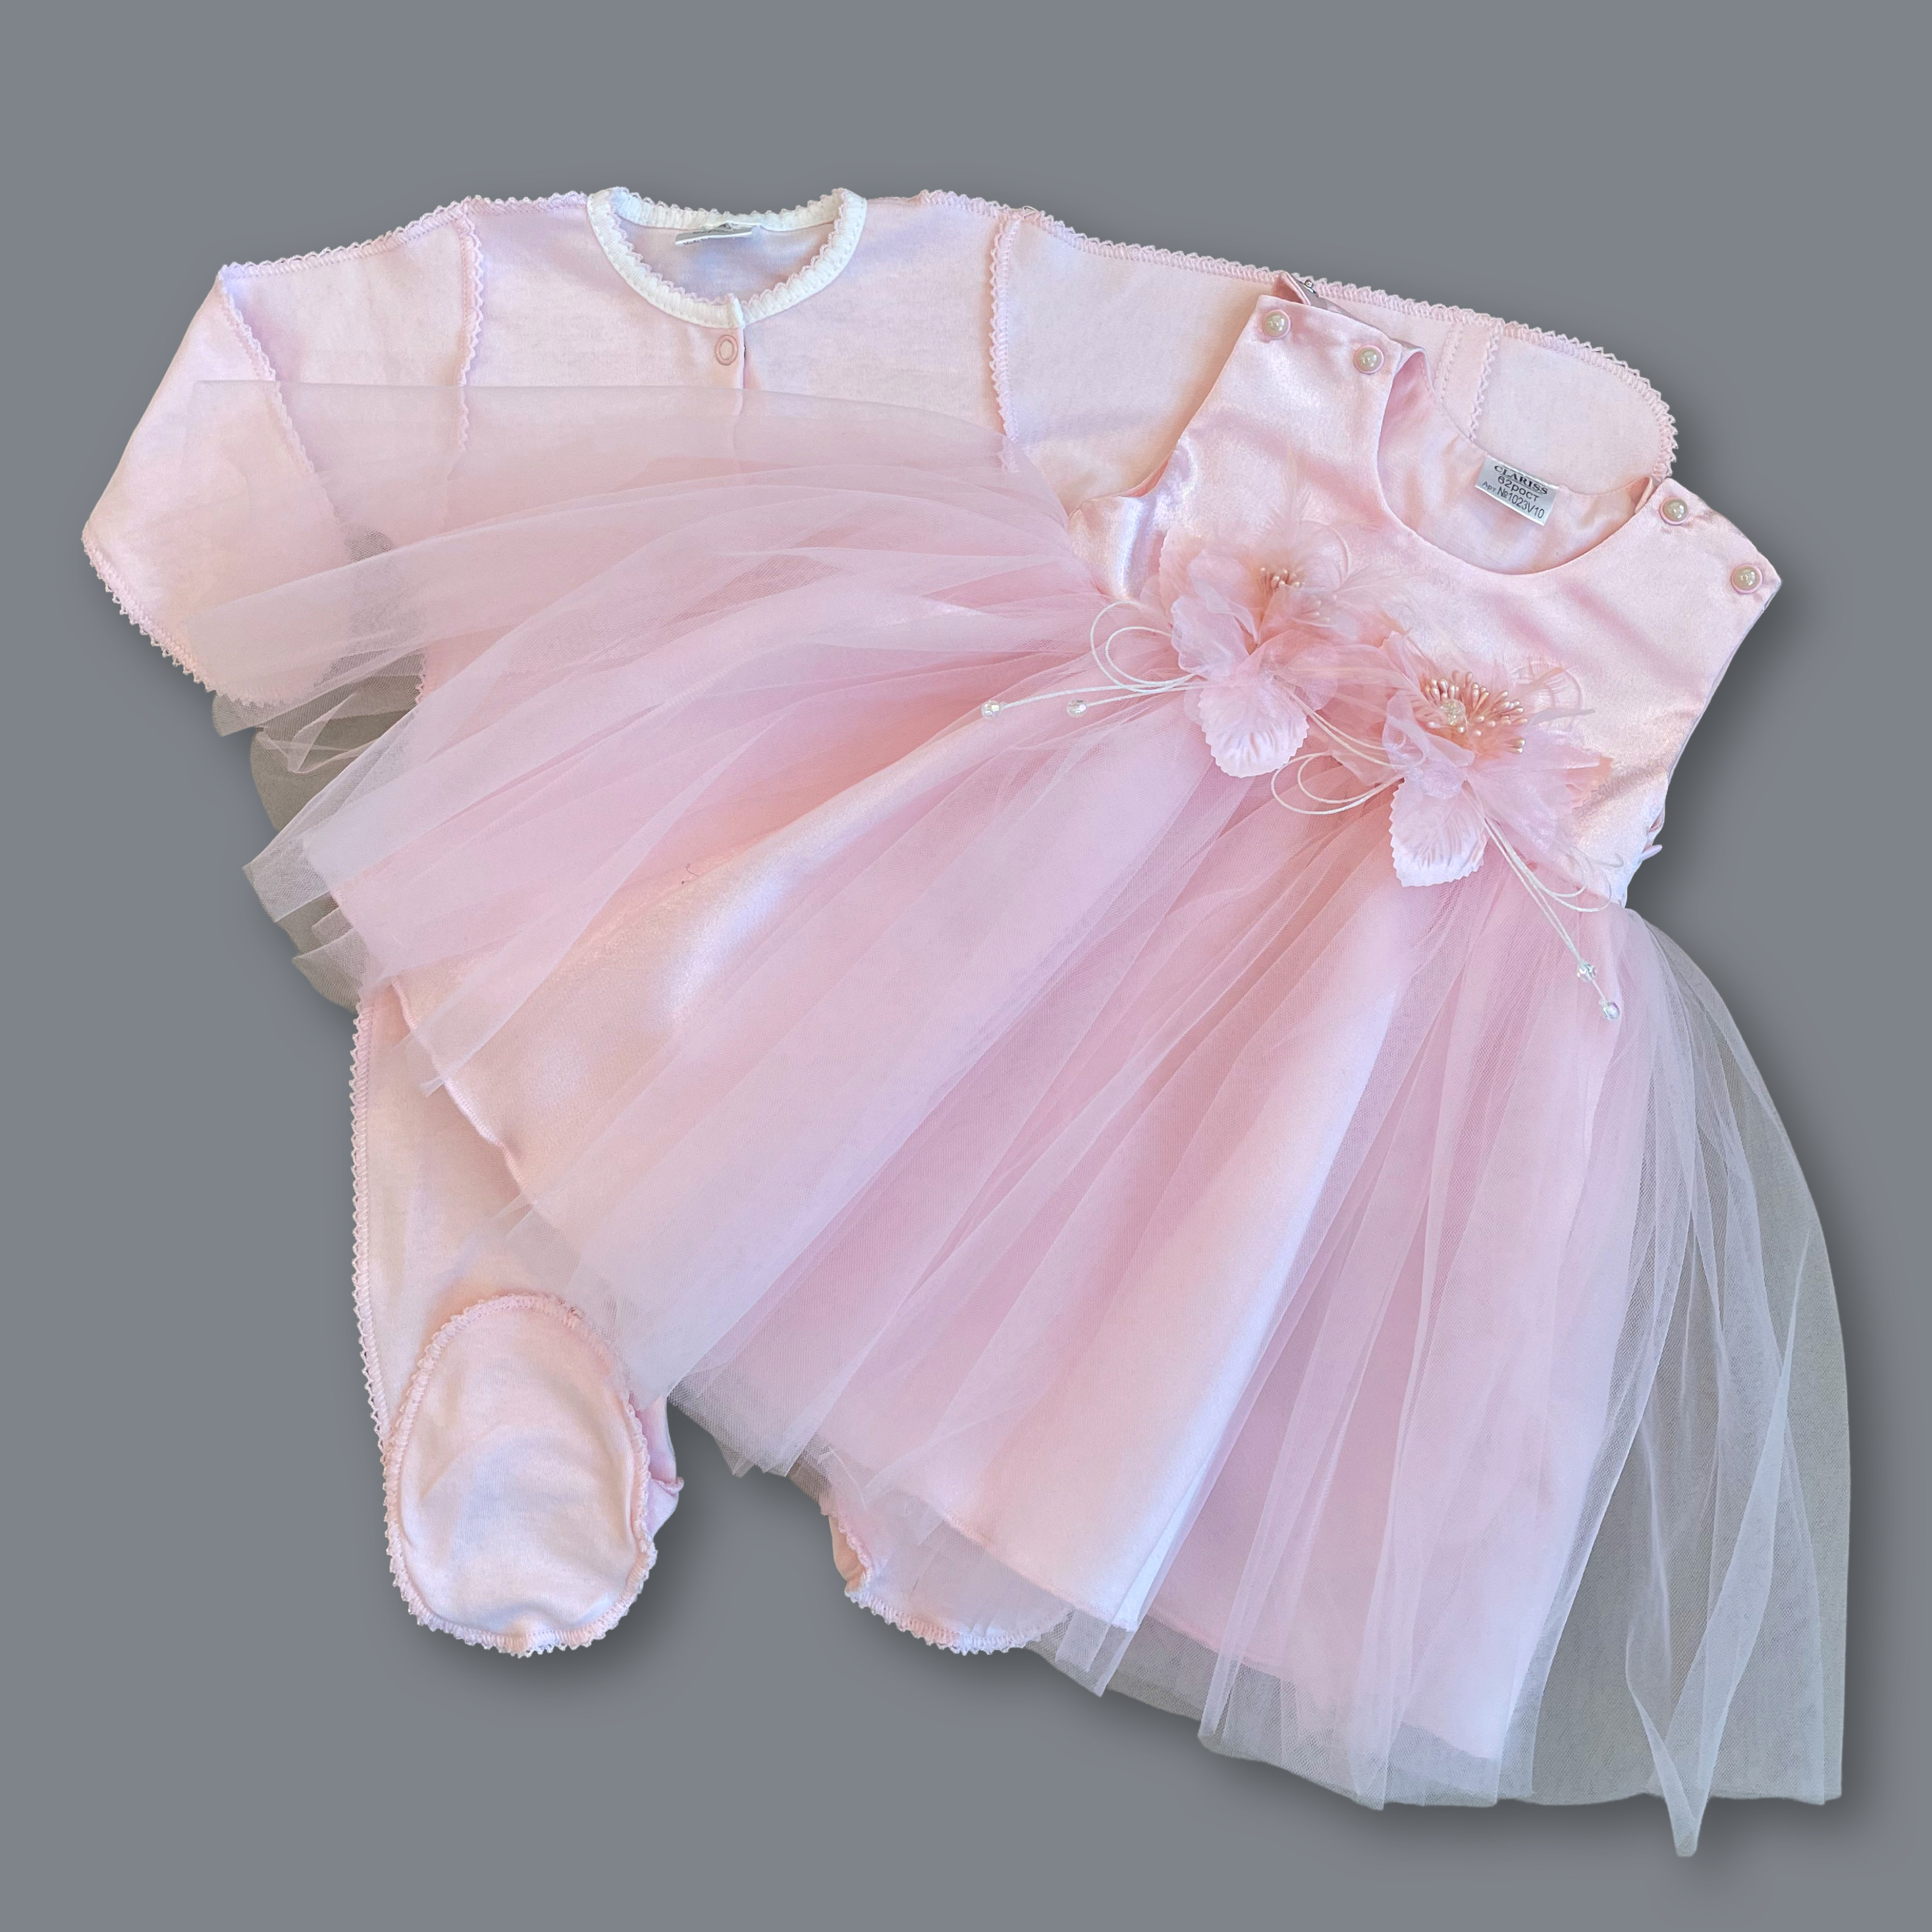 Комплект одежды детский Clariss Мадемуазель, розовый, 74